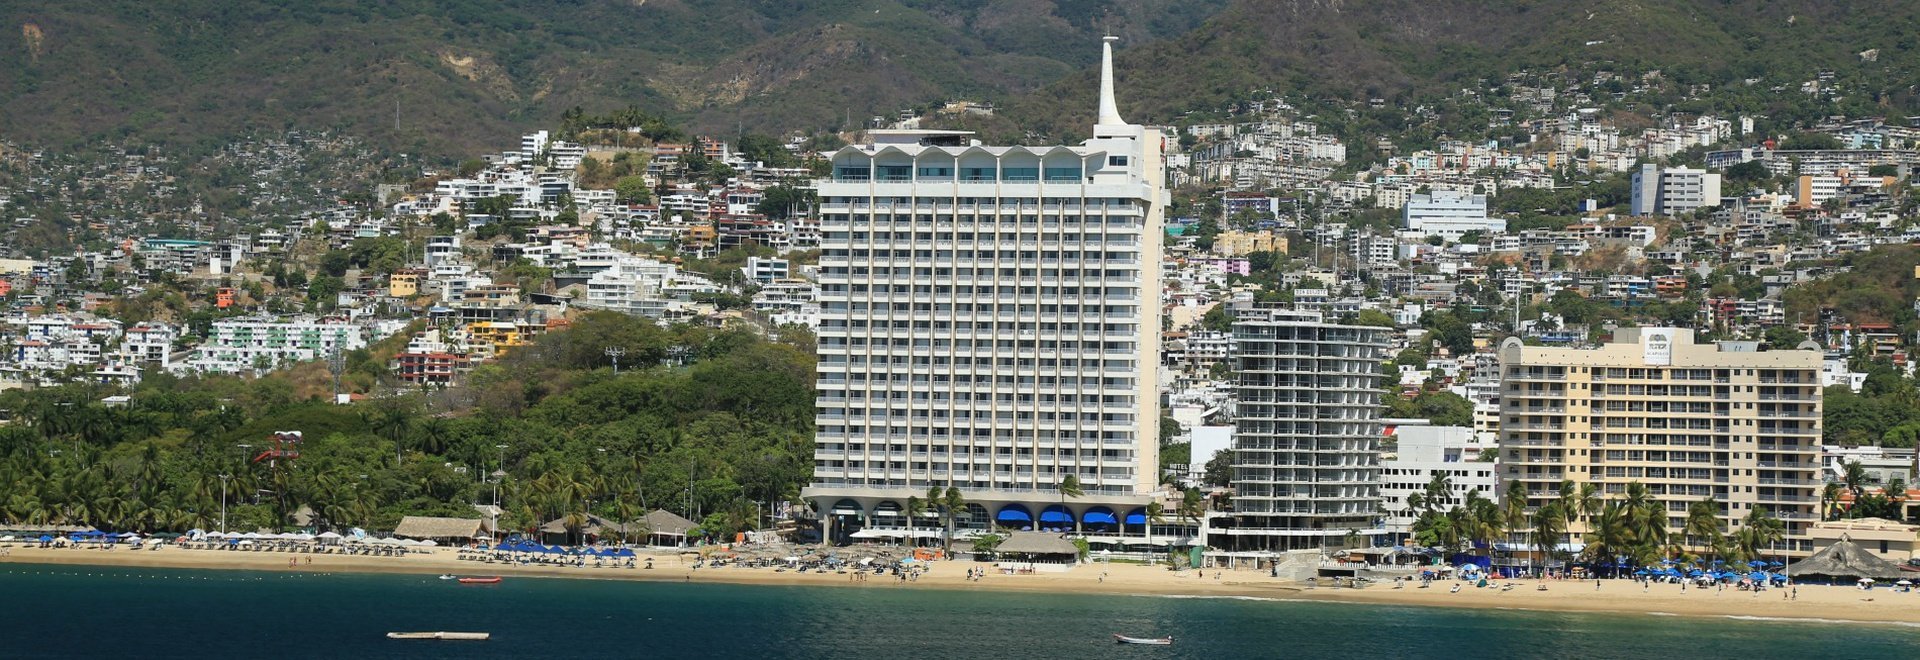 Hotel Krystal Beach Acapulco -  